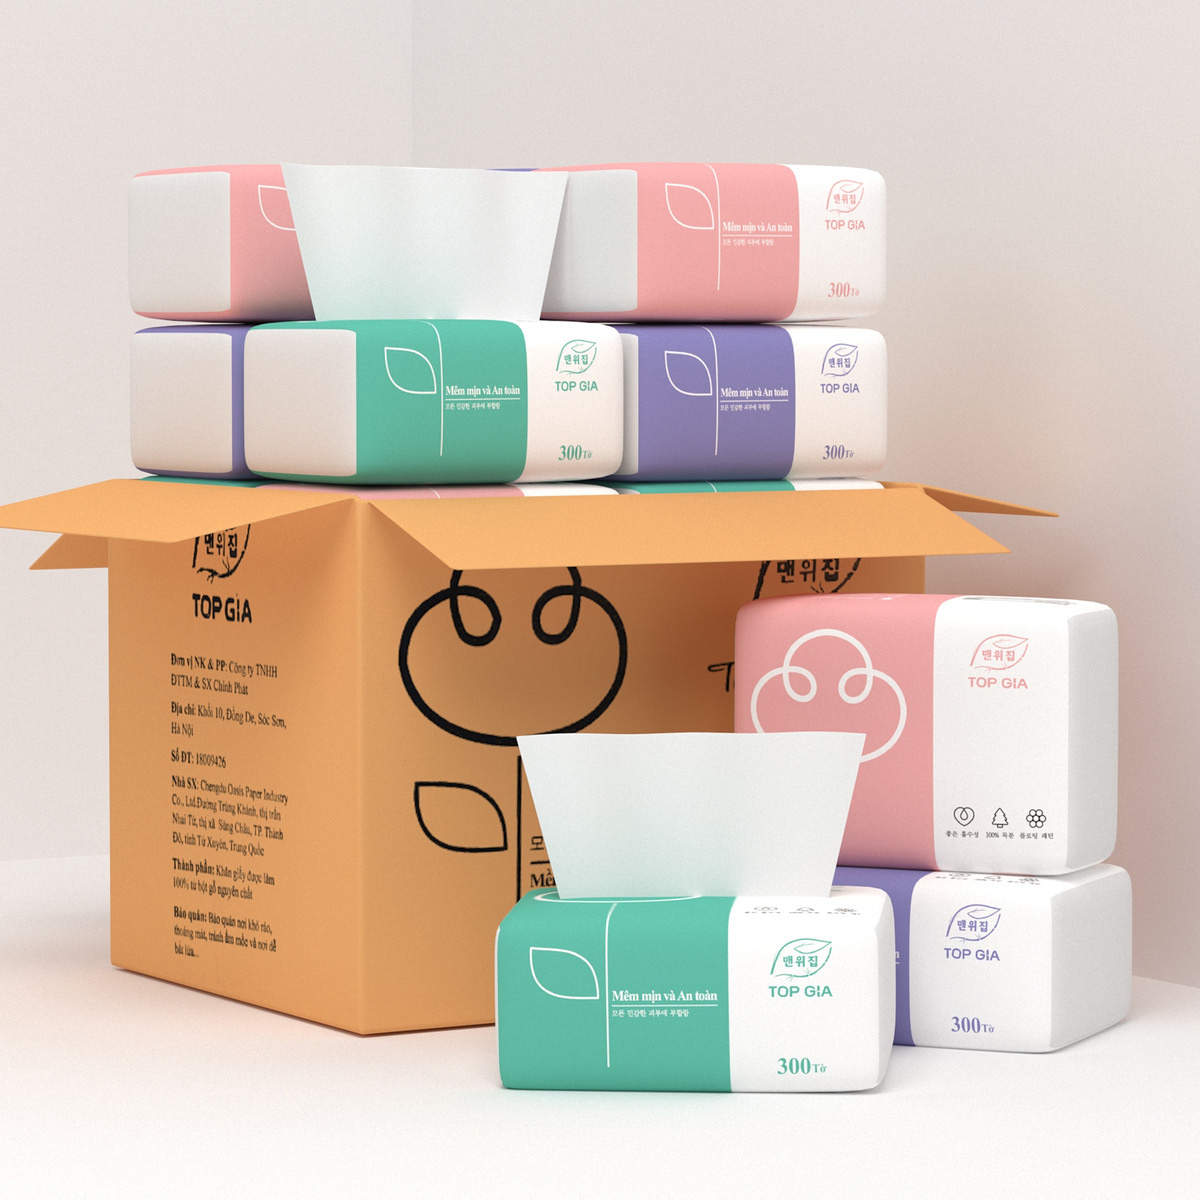 tissue tissue paper Tissue Box tissue box design Wet wipes wet wipes packaging tissues packaging